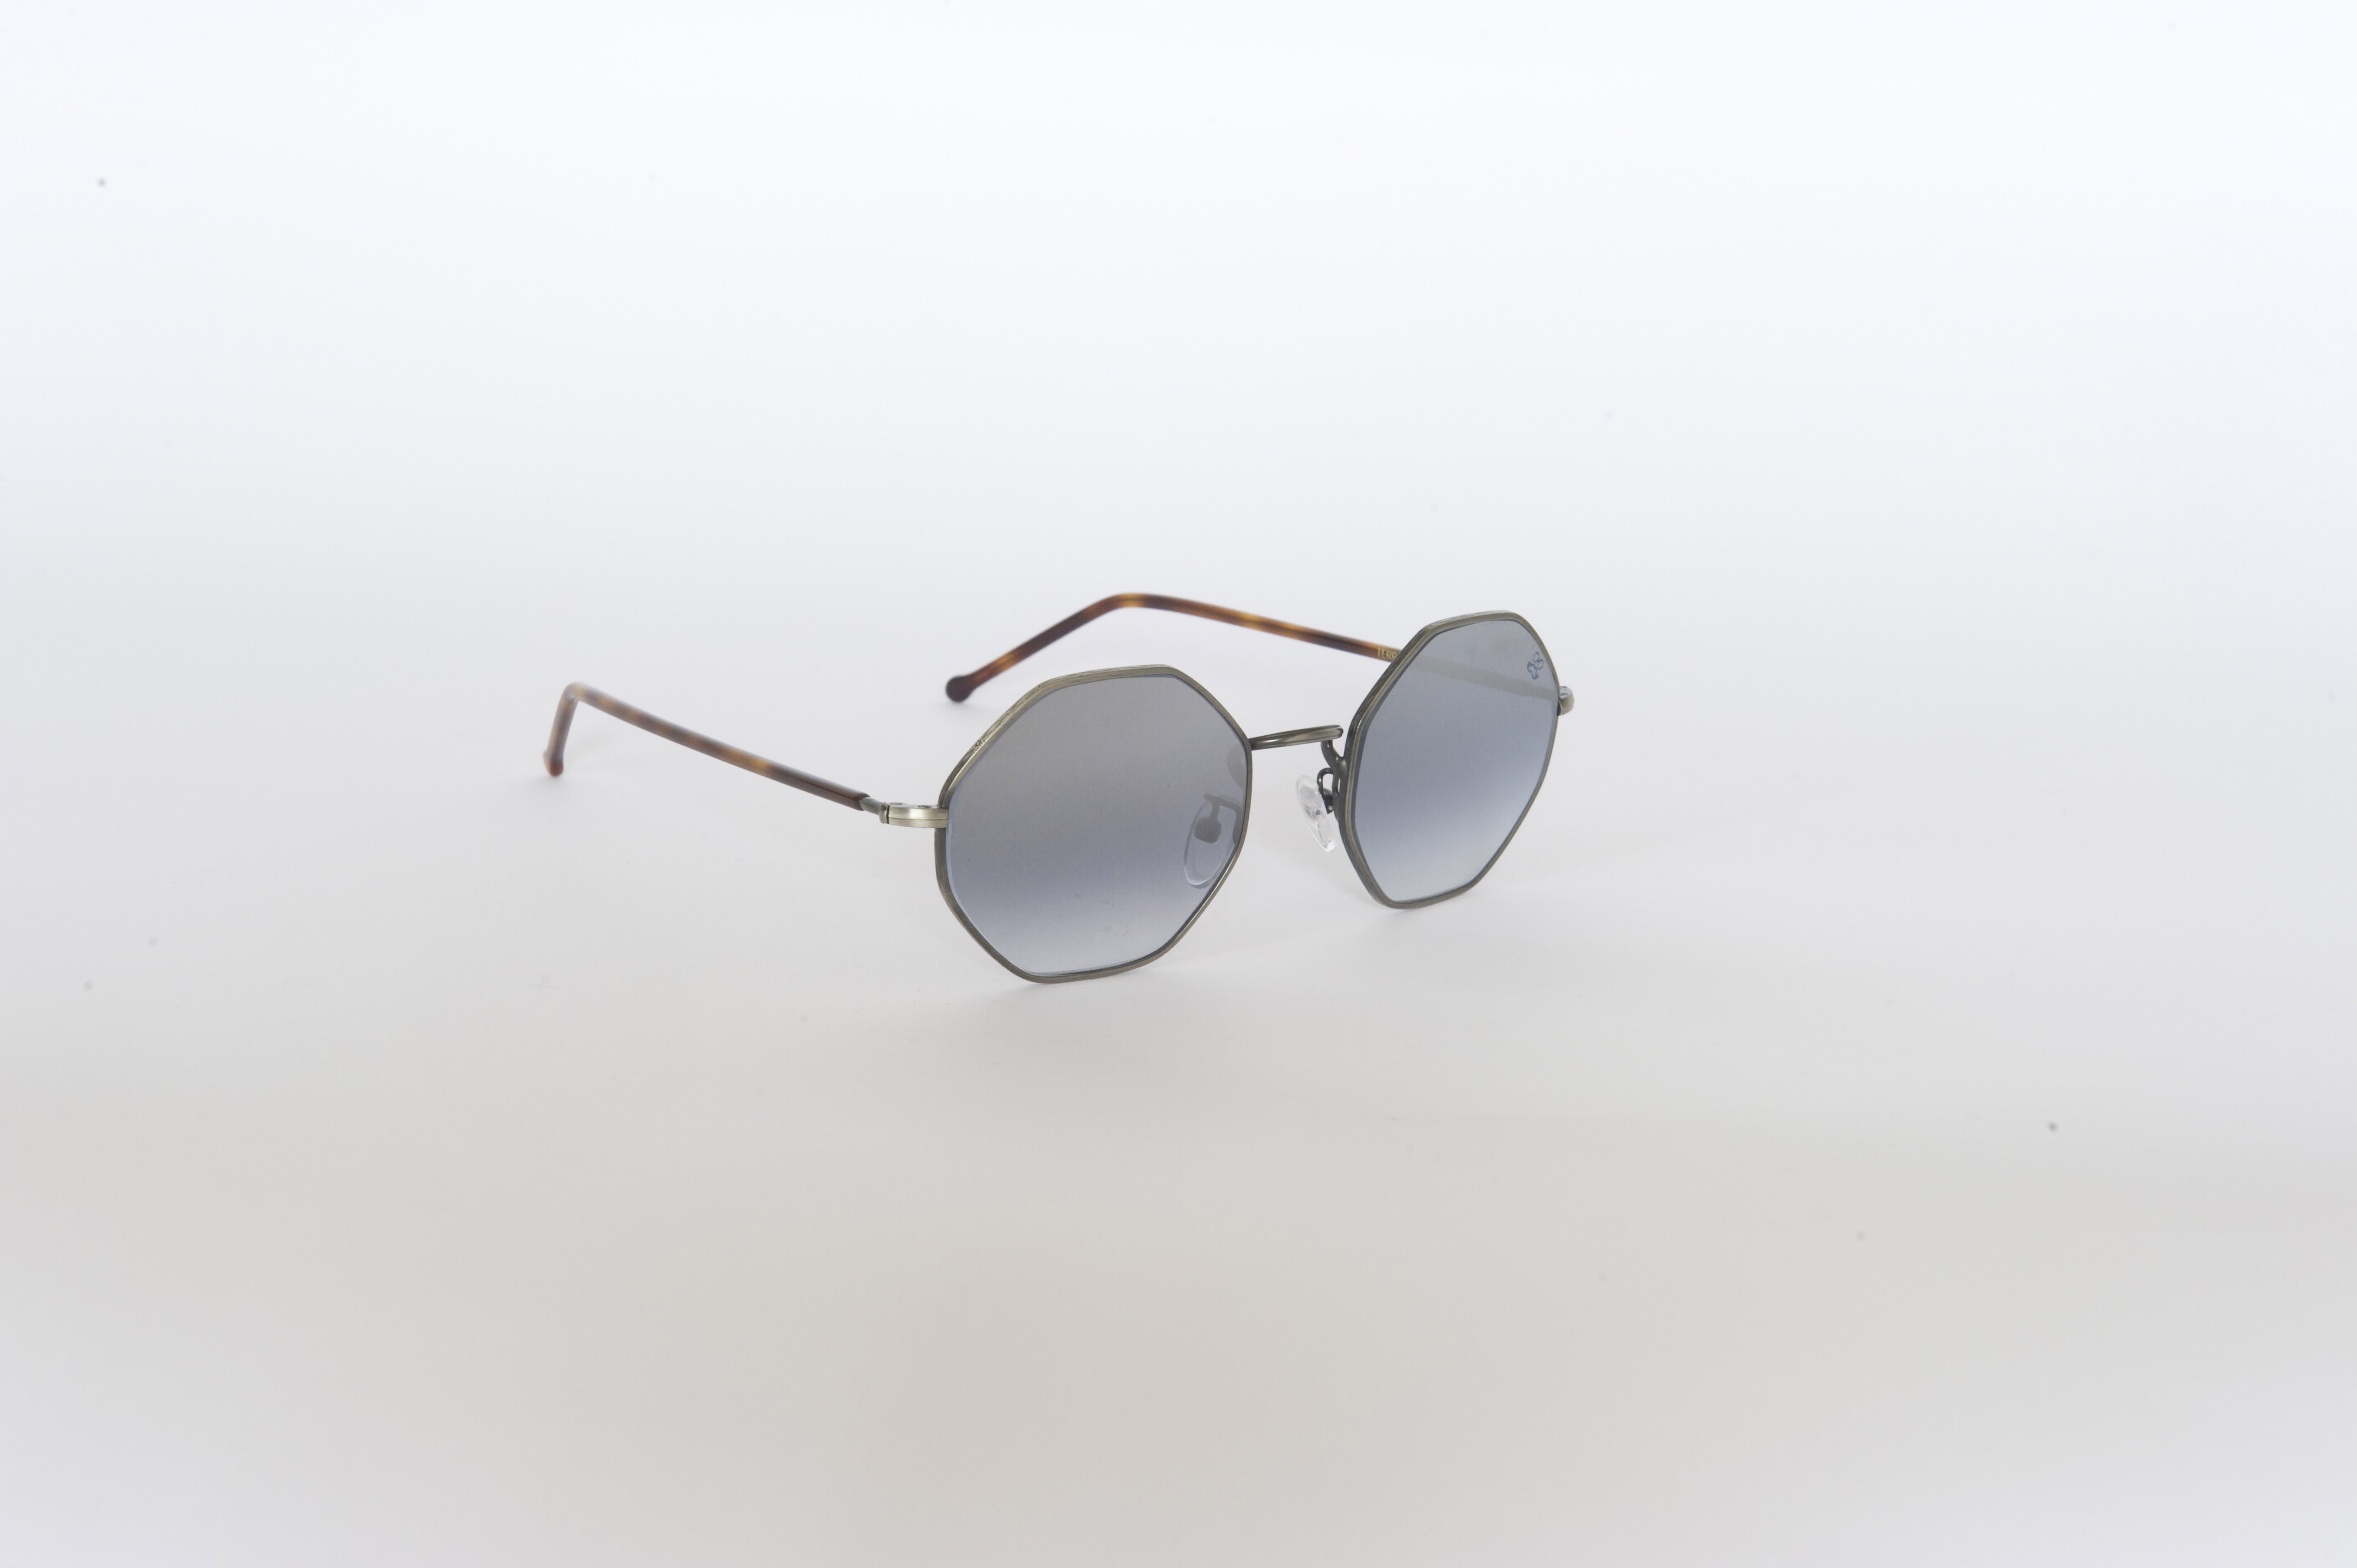 Pitti Uomo Gennaio 2016 Firenze: la nuova collezione di occhiali da sole di David Marc